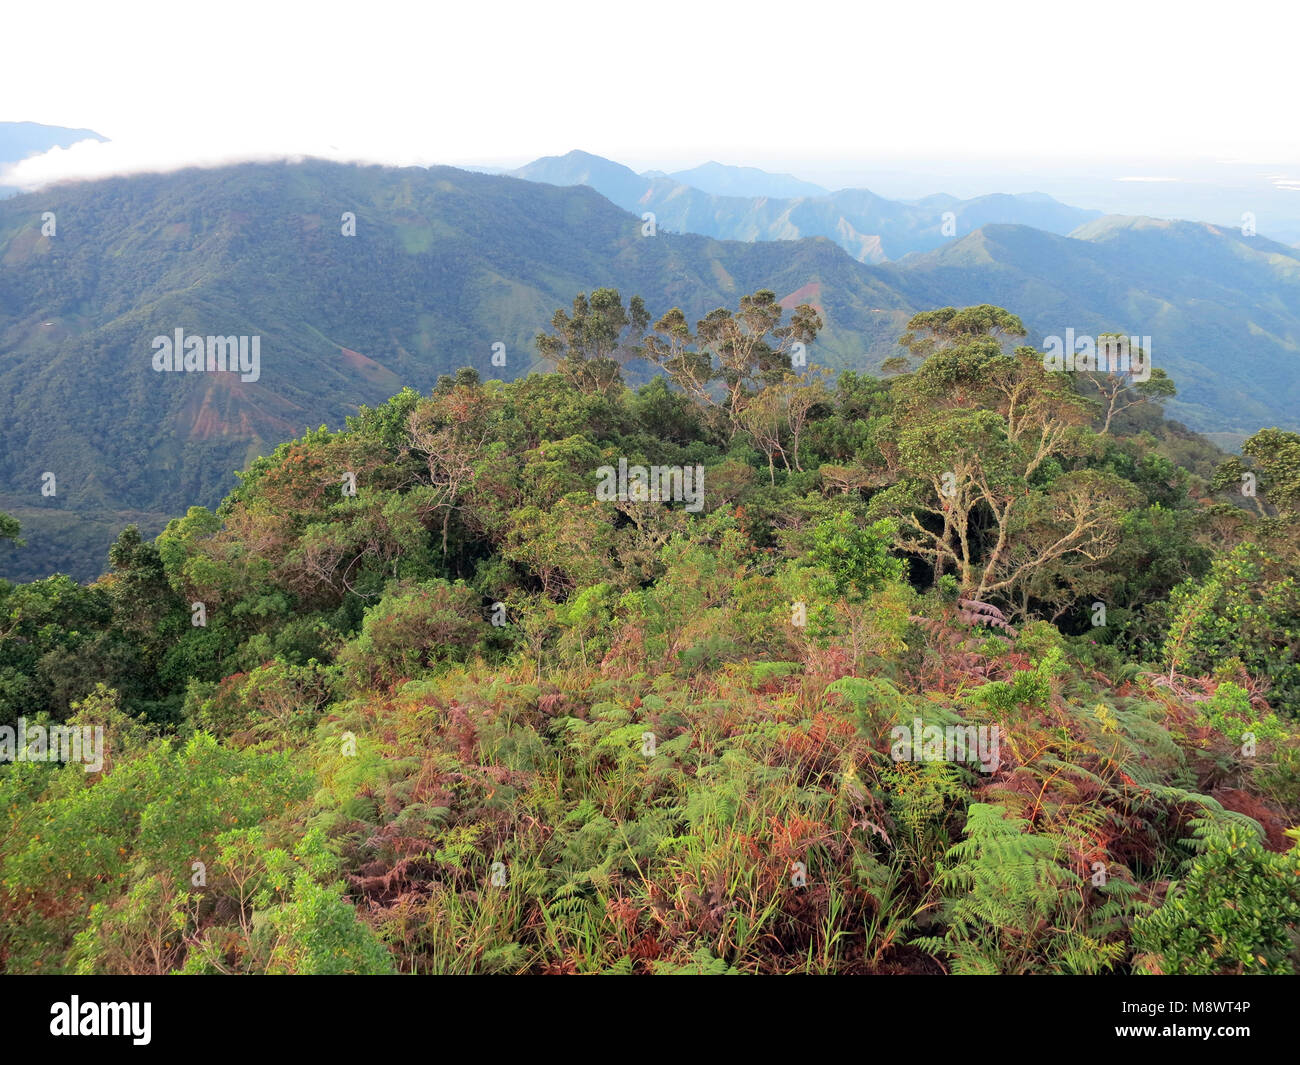 Nevelwoud / bosque nuboso; Santa Marta Sierra, Sierra Nevada, Colombia. Foto de stock